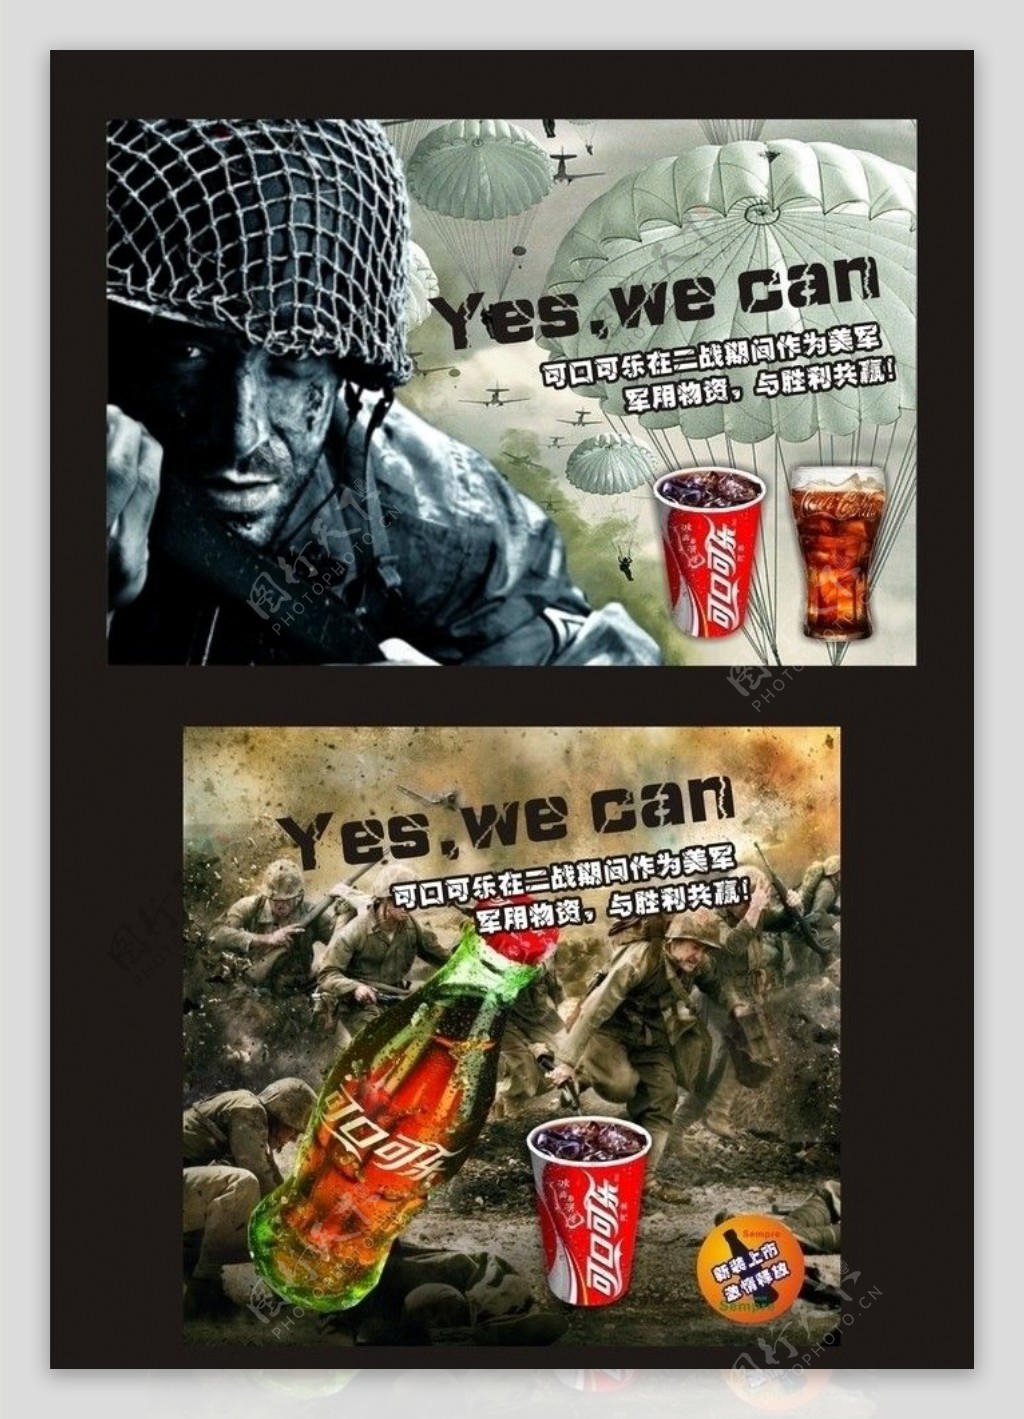 可口可乐广告图片